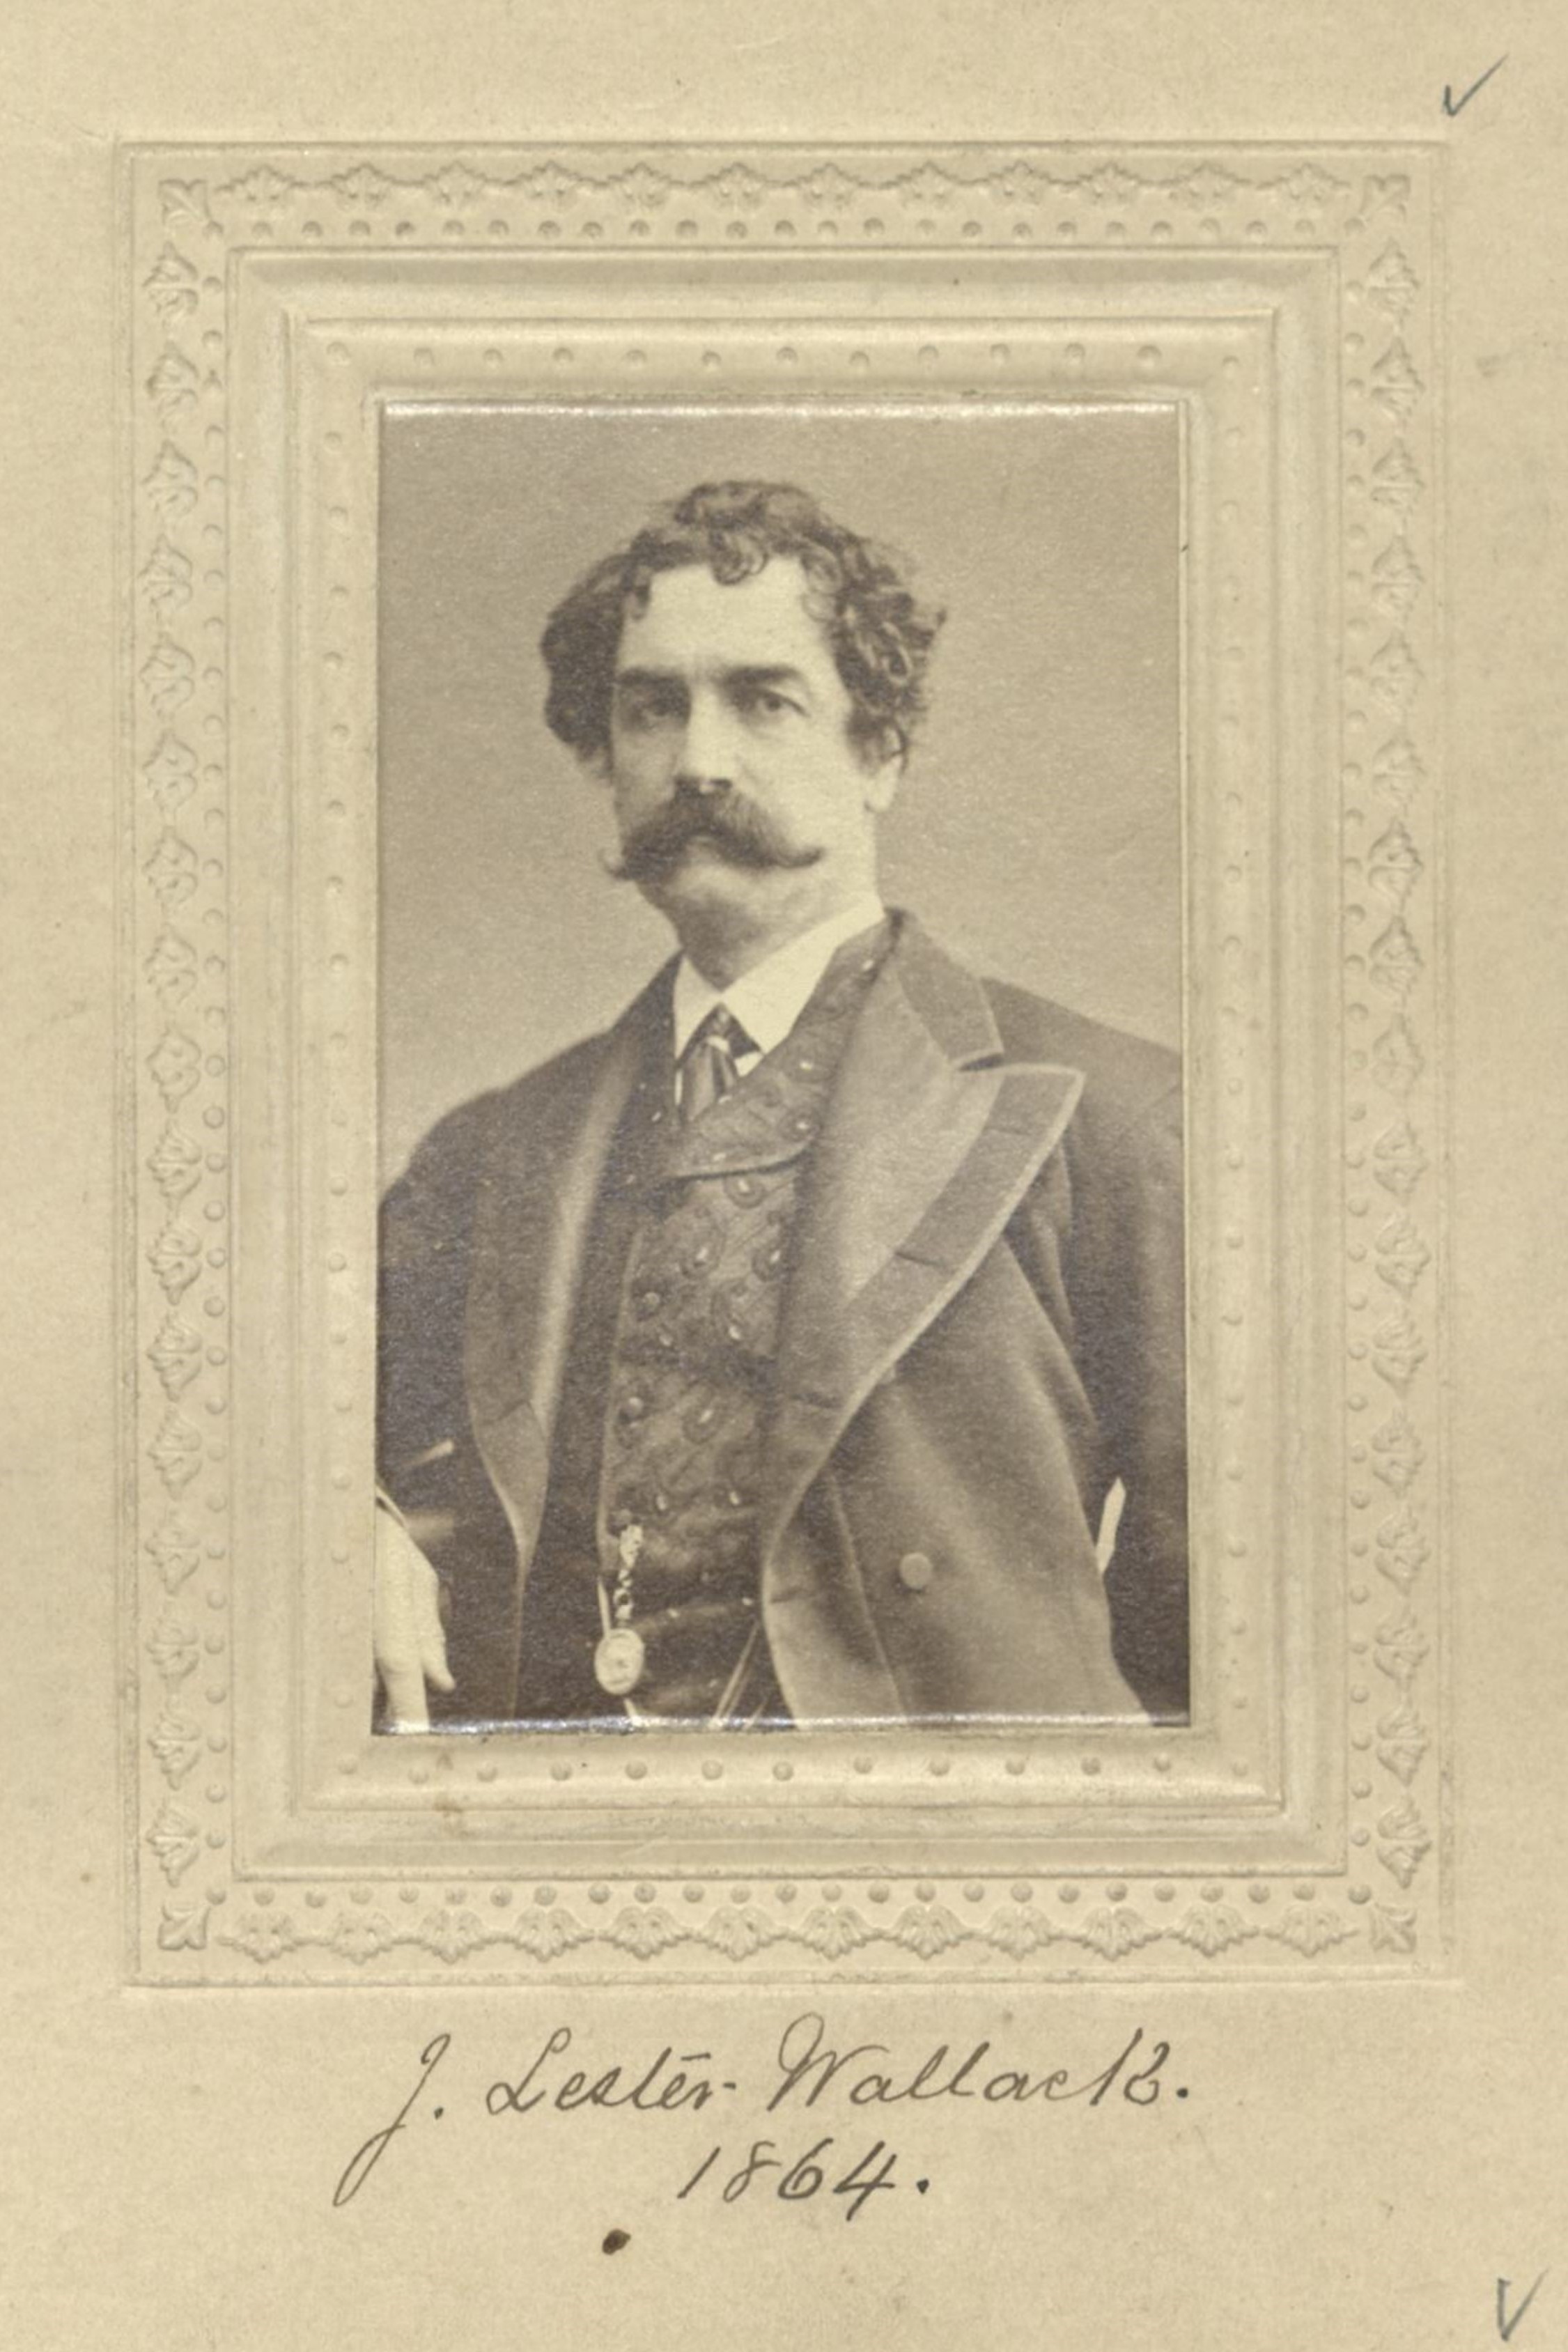 Member portrait of John Lester Wallack